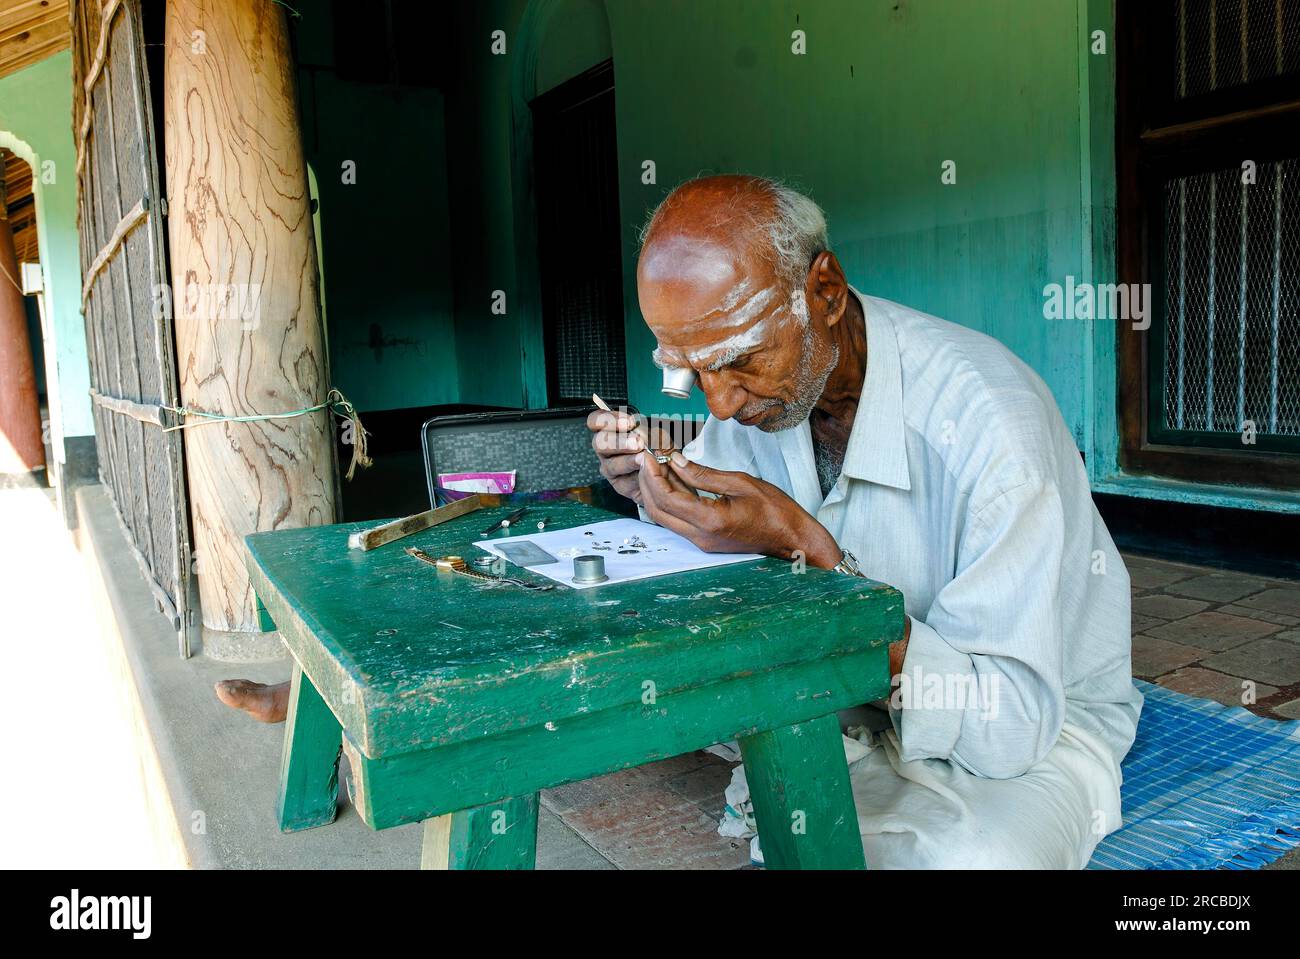 Un vieil homme réparateur de montres assis devant une maison Agraharam maison brahmin à Konerirajapuram près de Kumbakonam, Tamil Nadu, Inde du Sud, Inde, Asie Banque D'Images